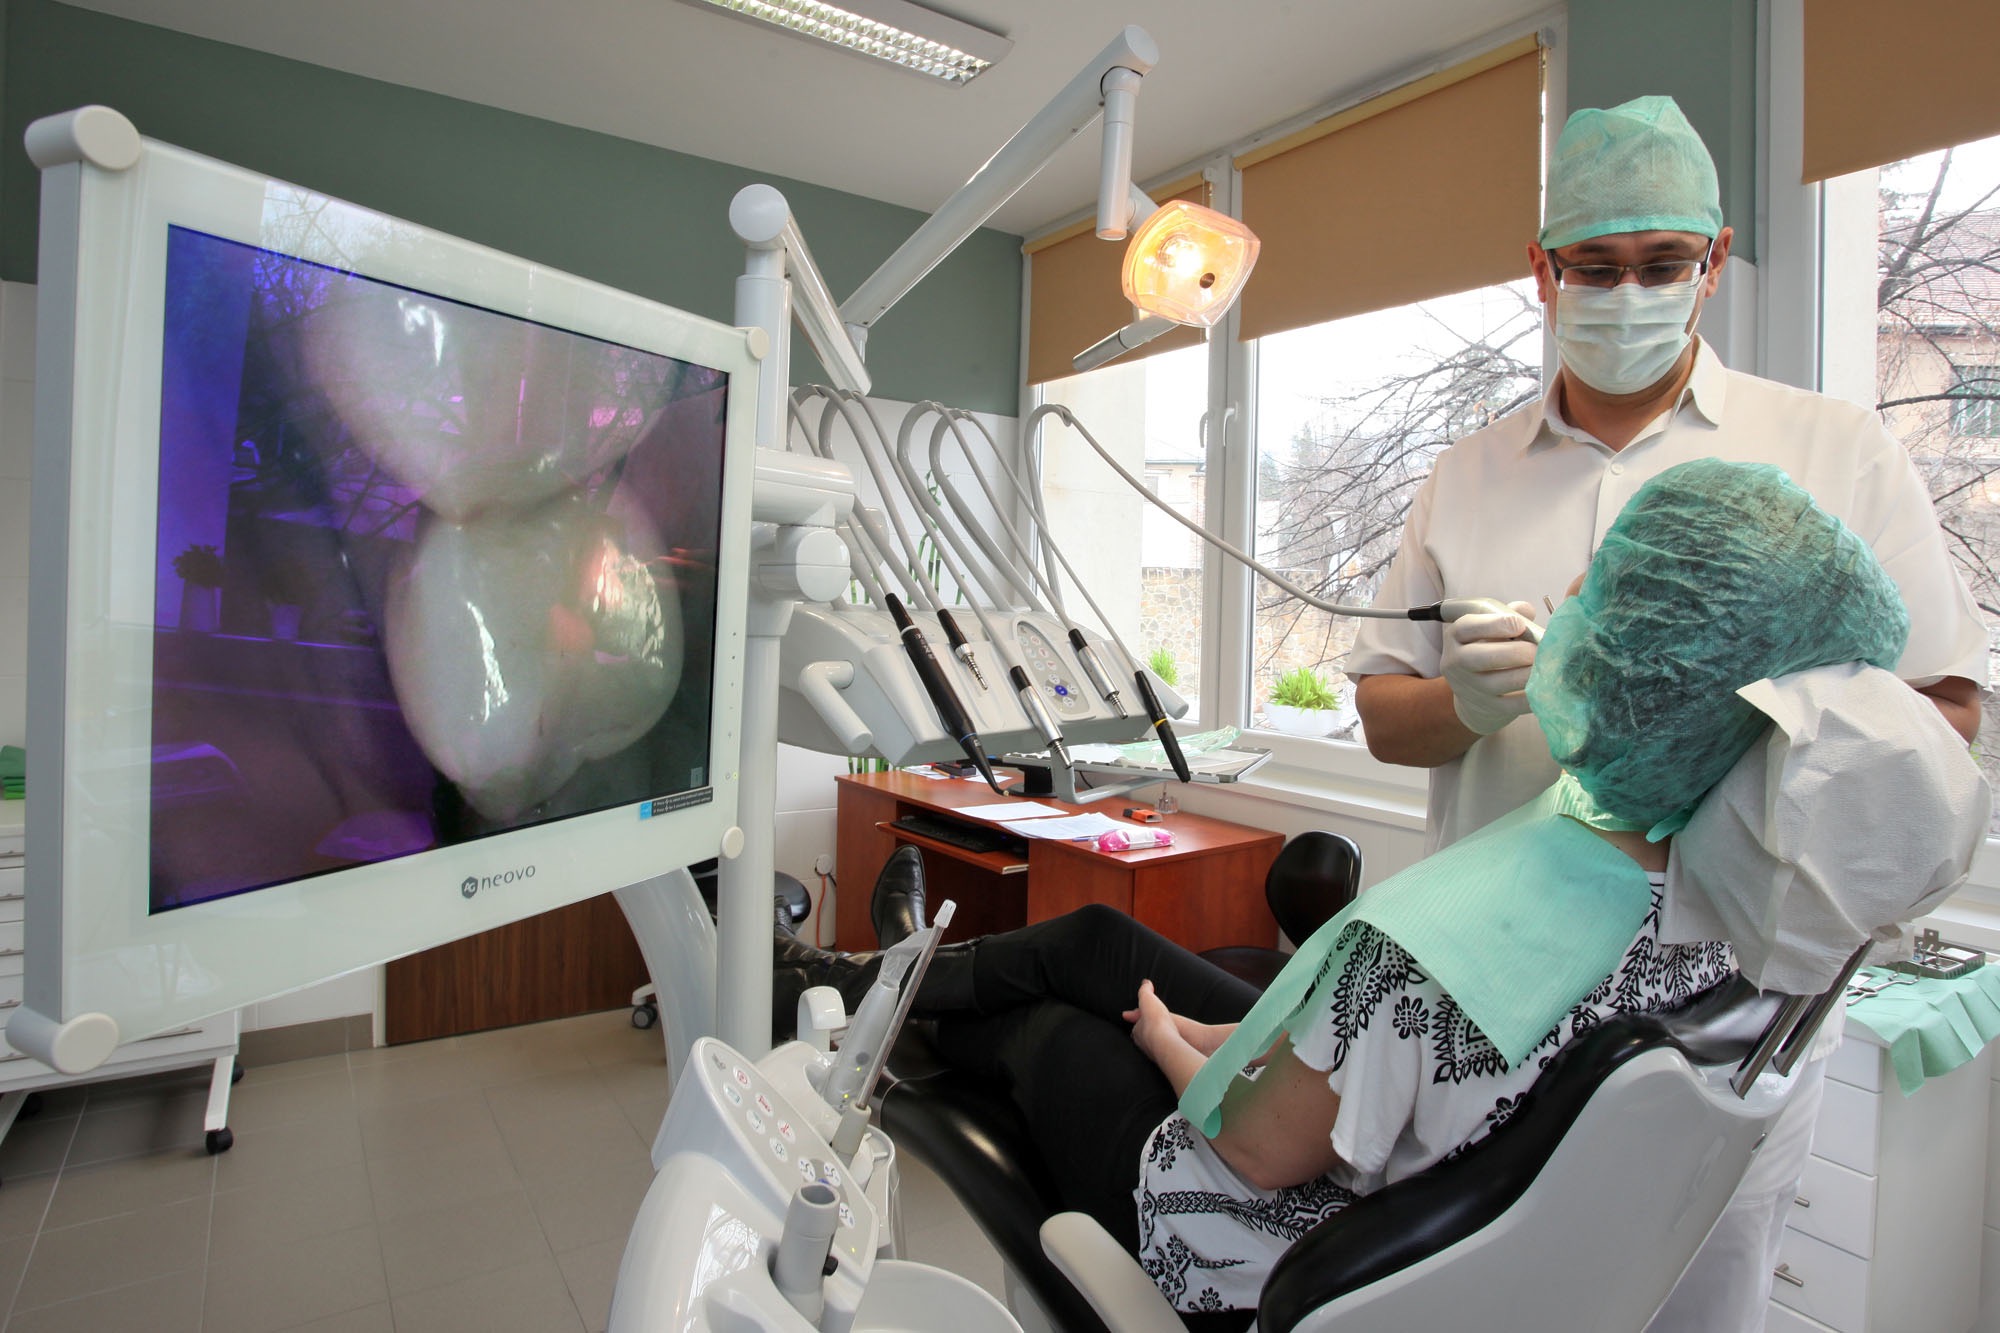 Hiányzó fogak pótlása fogászati implantátumok beépítésével, fogbeültetés - PREMIUM DENTAL fogászat, Budapest